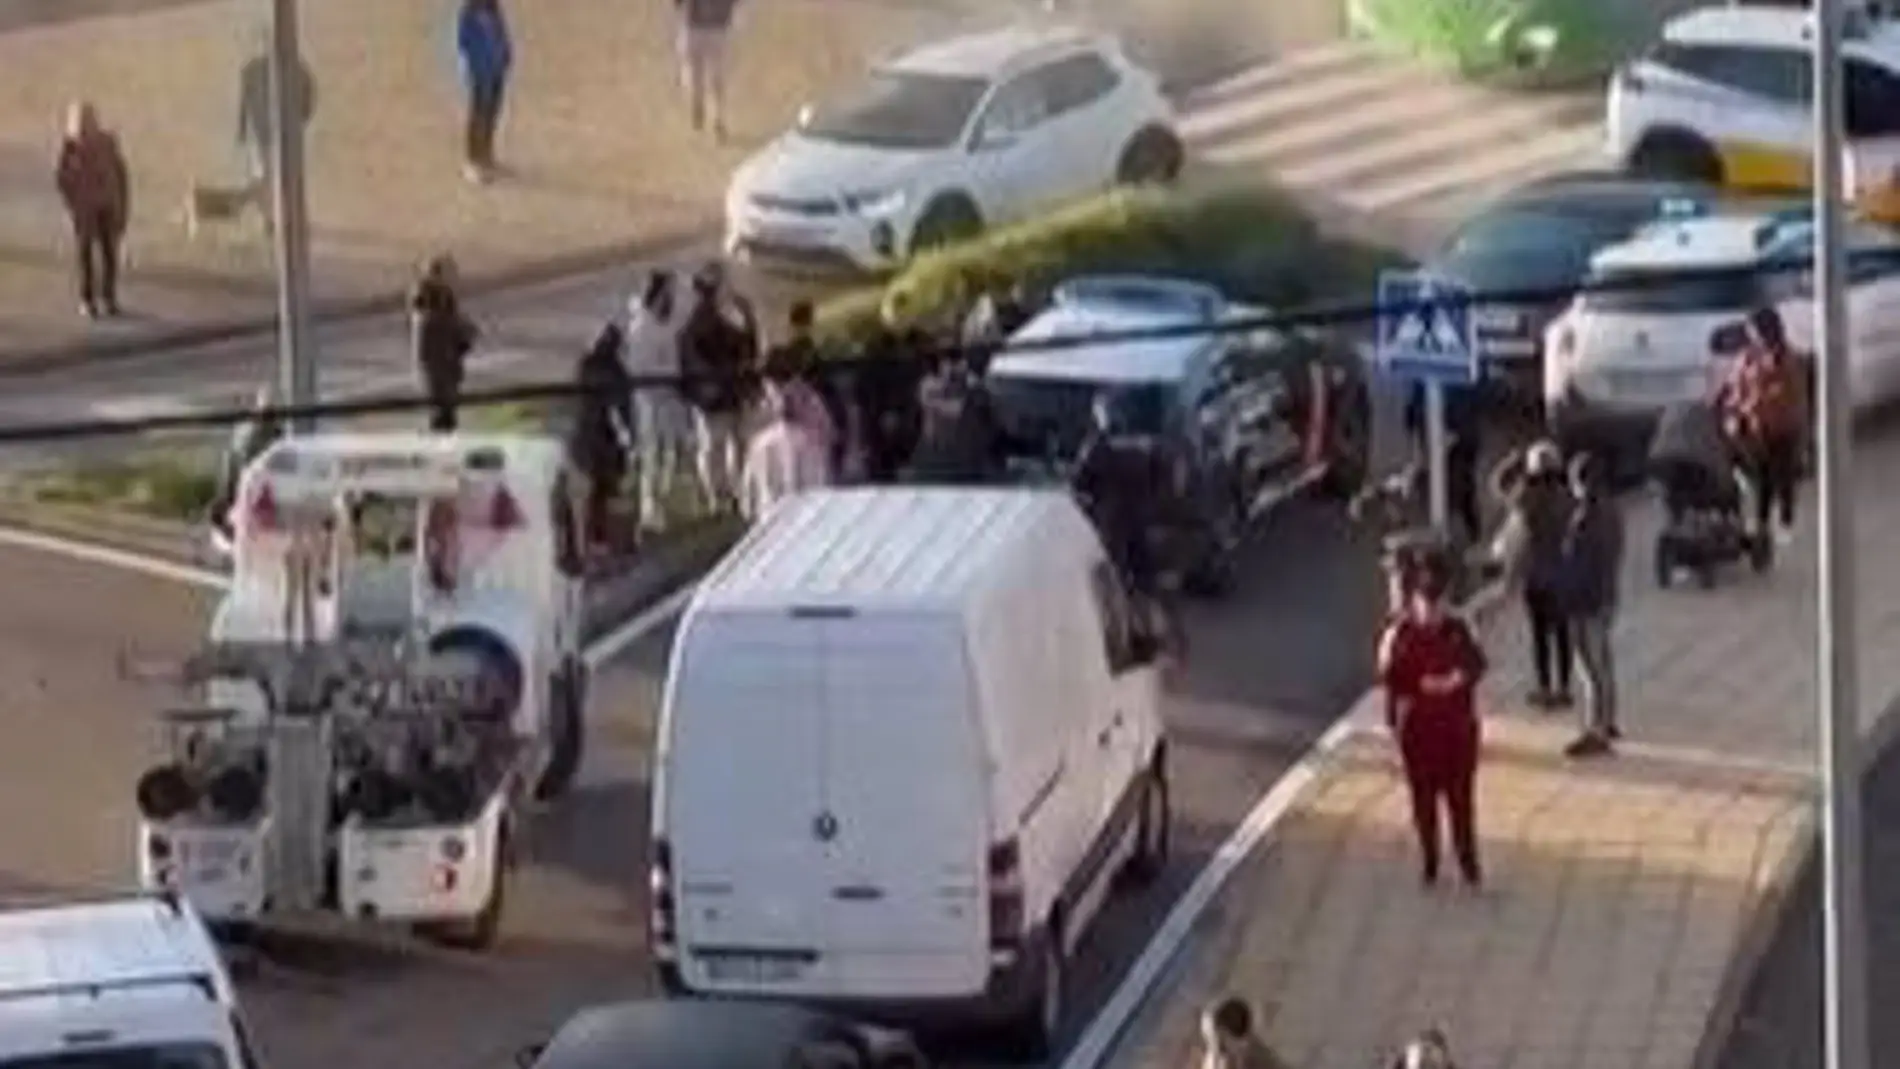 El juzgado decreta la prisión provisional para el conductor temerario de Aldea Moret en Cáceres